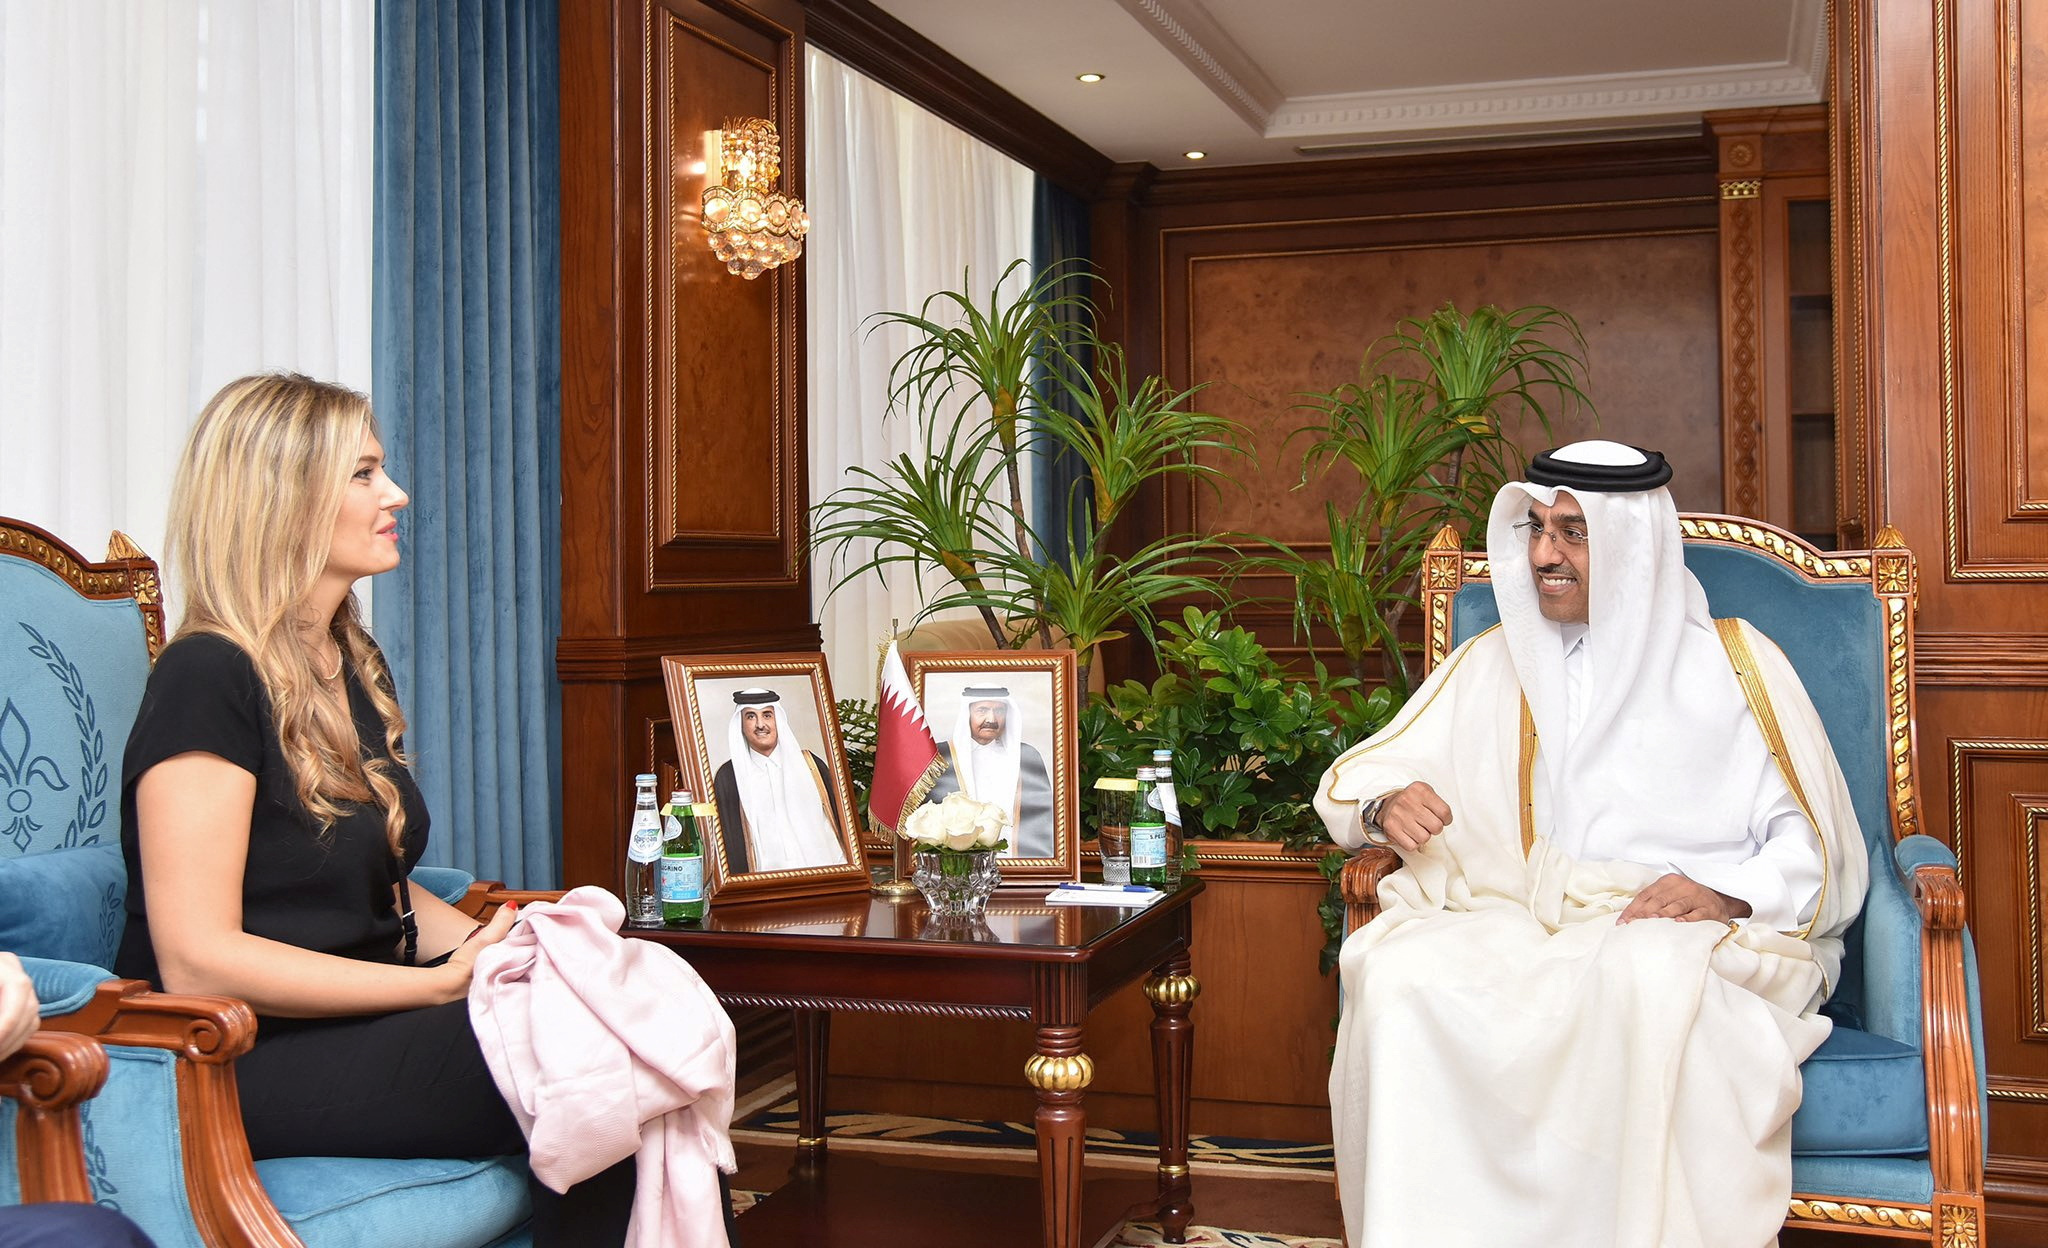 Qatar Labor Minister Al Marri meets Kaili, Vice-President of the European Parliament, at a meeting in Qatar